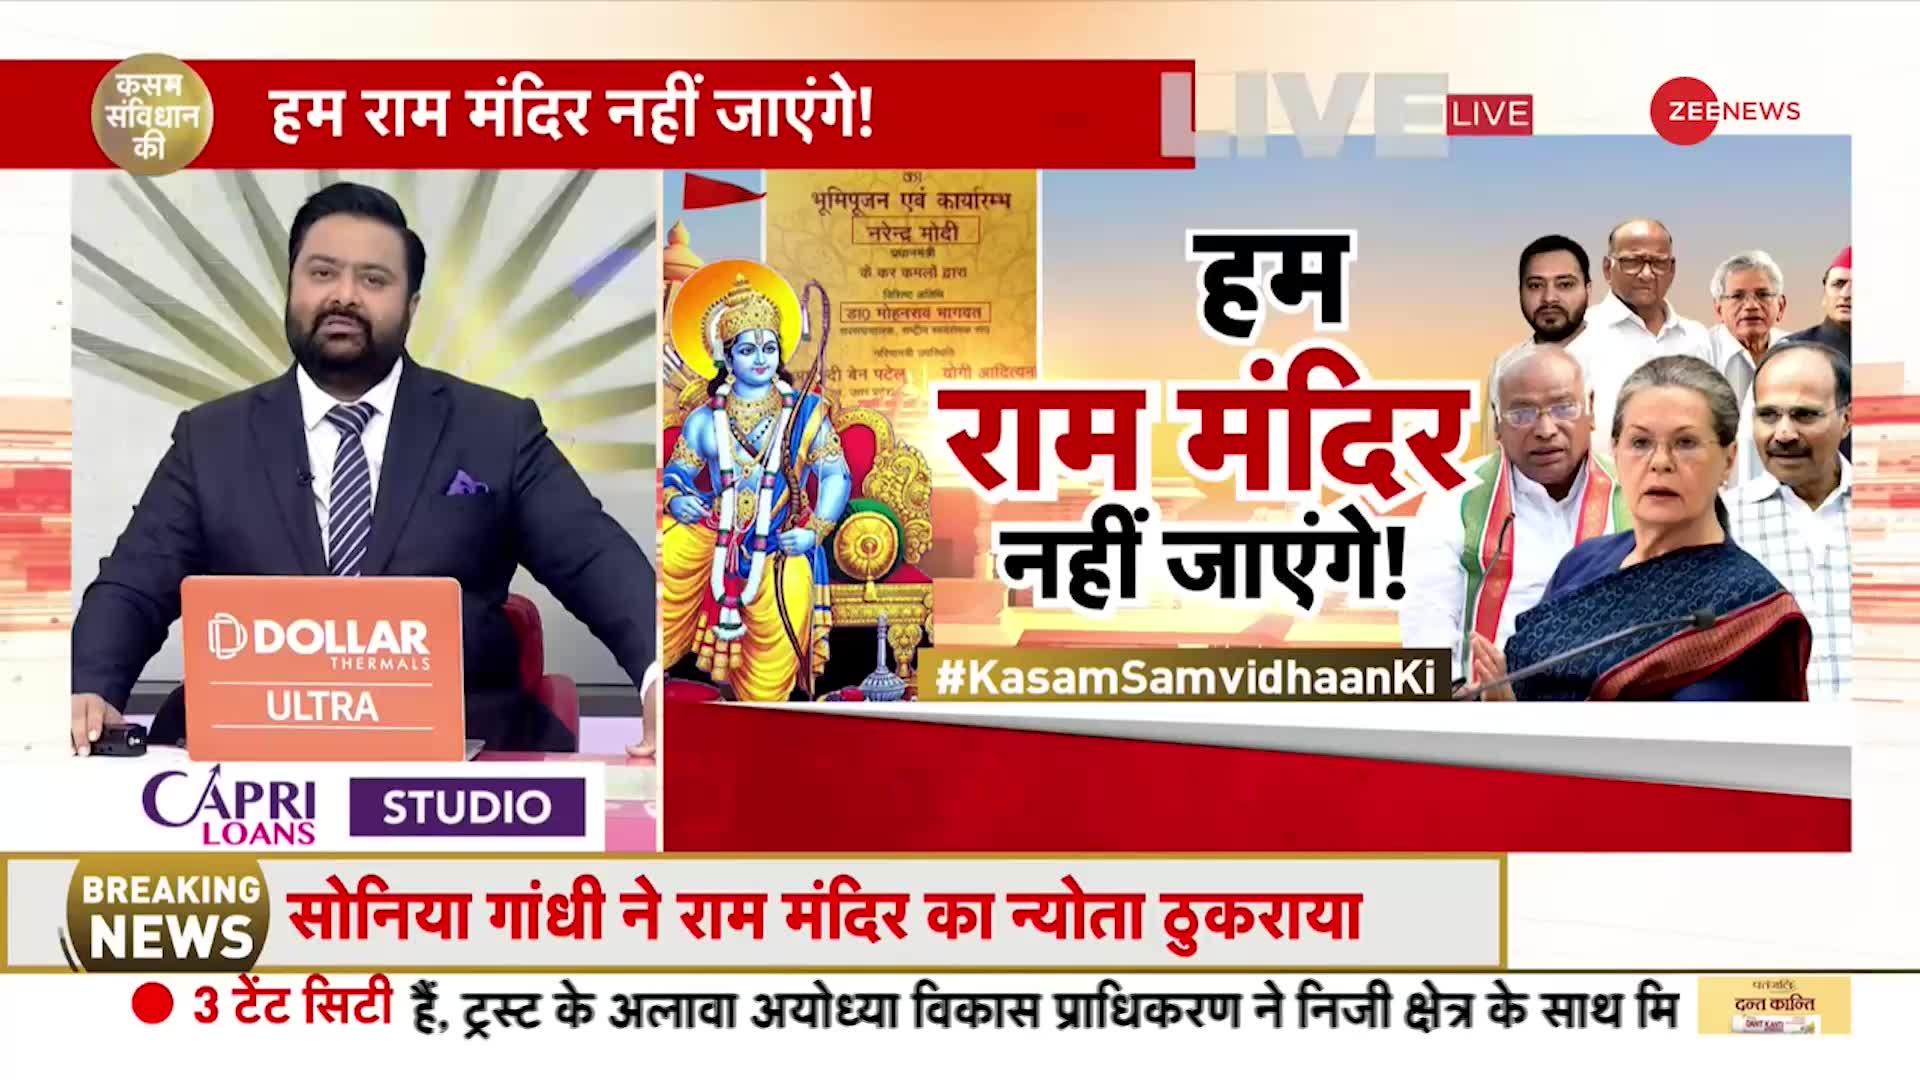 Kasam Samvidhan Ki: हम राम मंदिर नहीं जाएंगे!